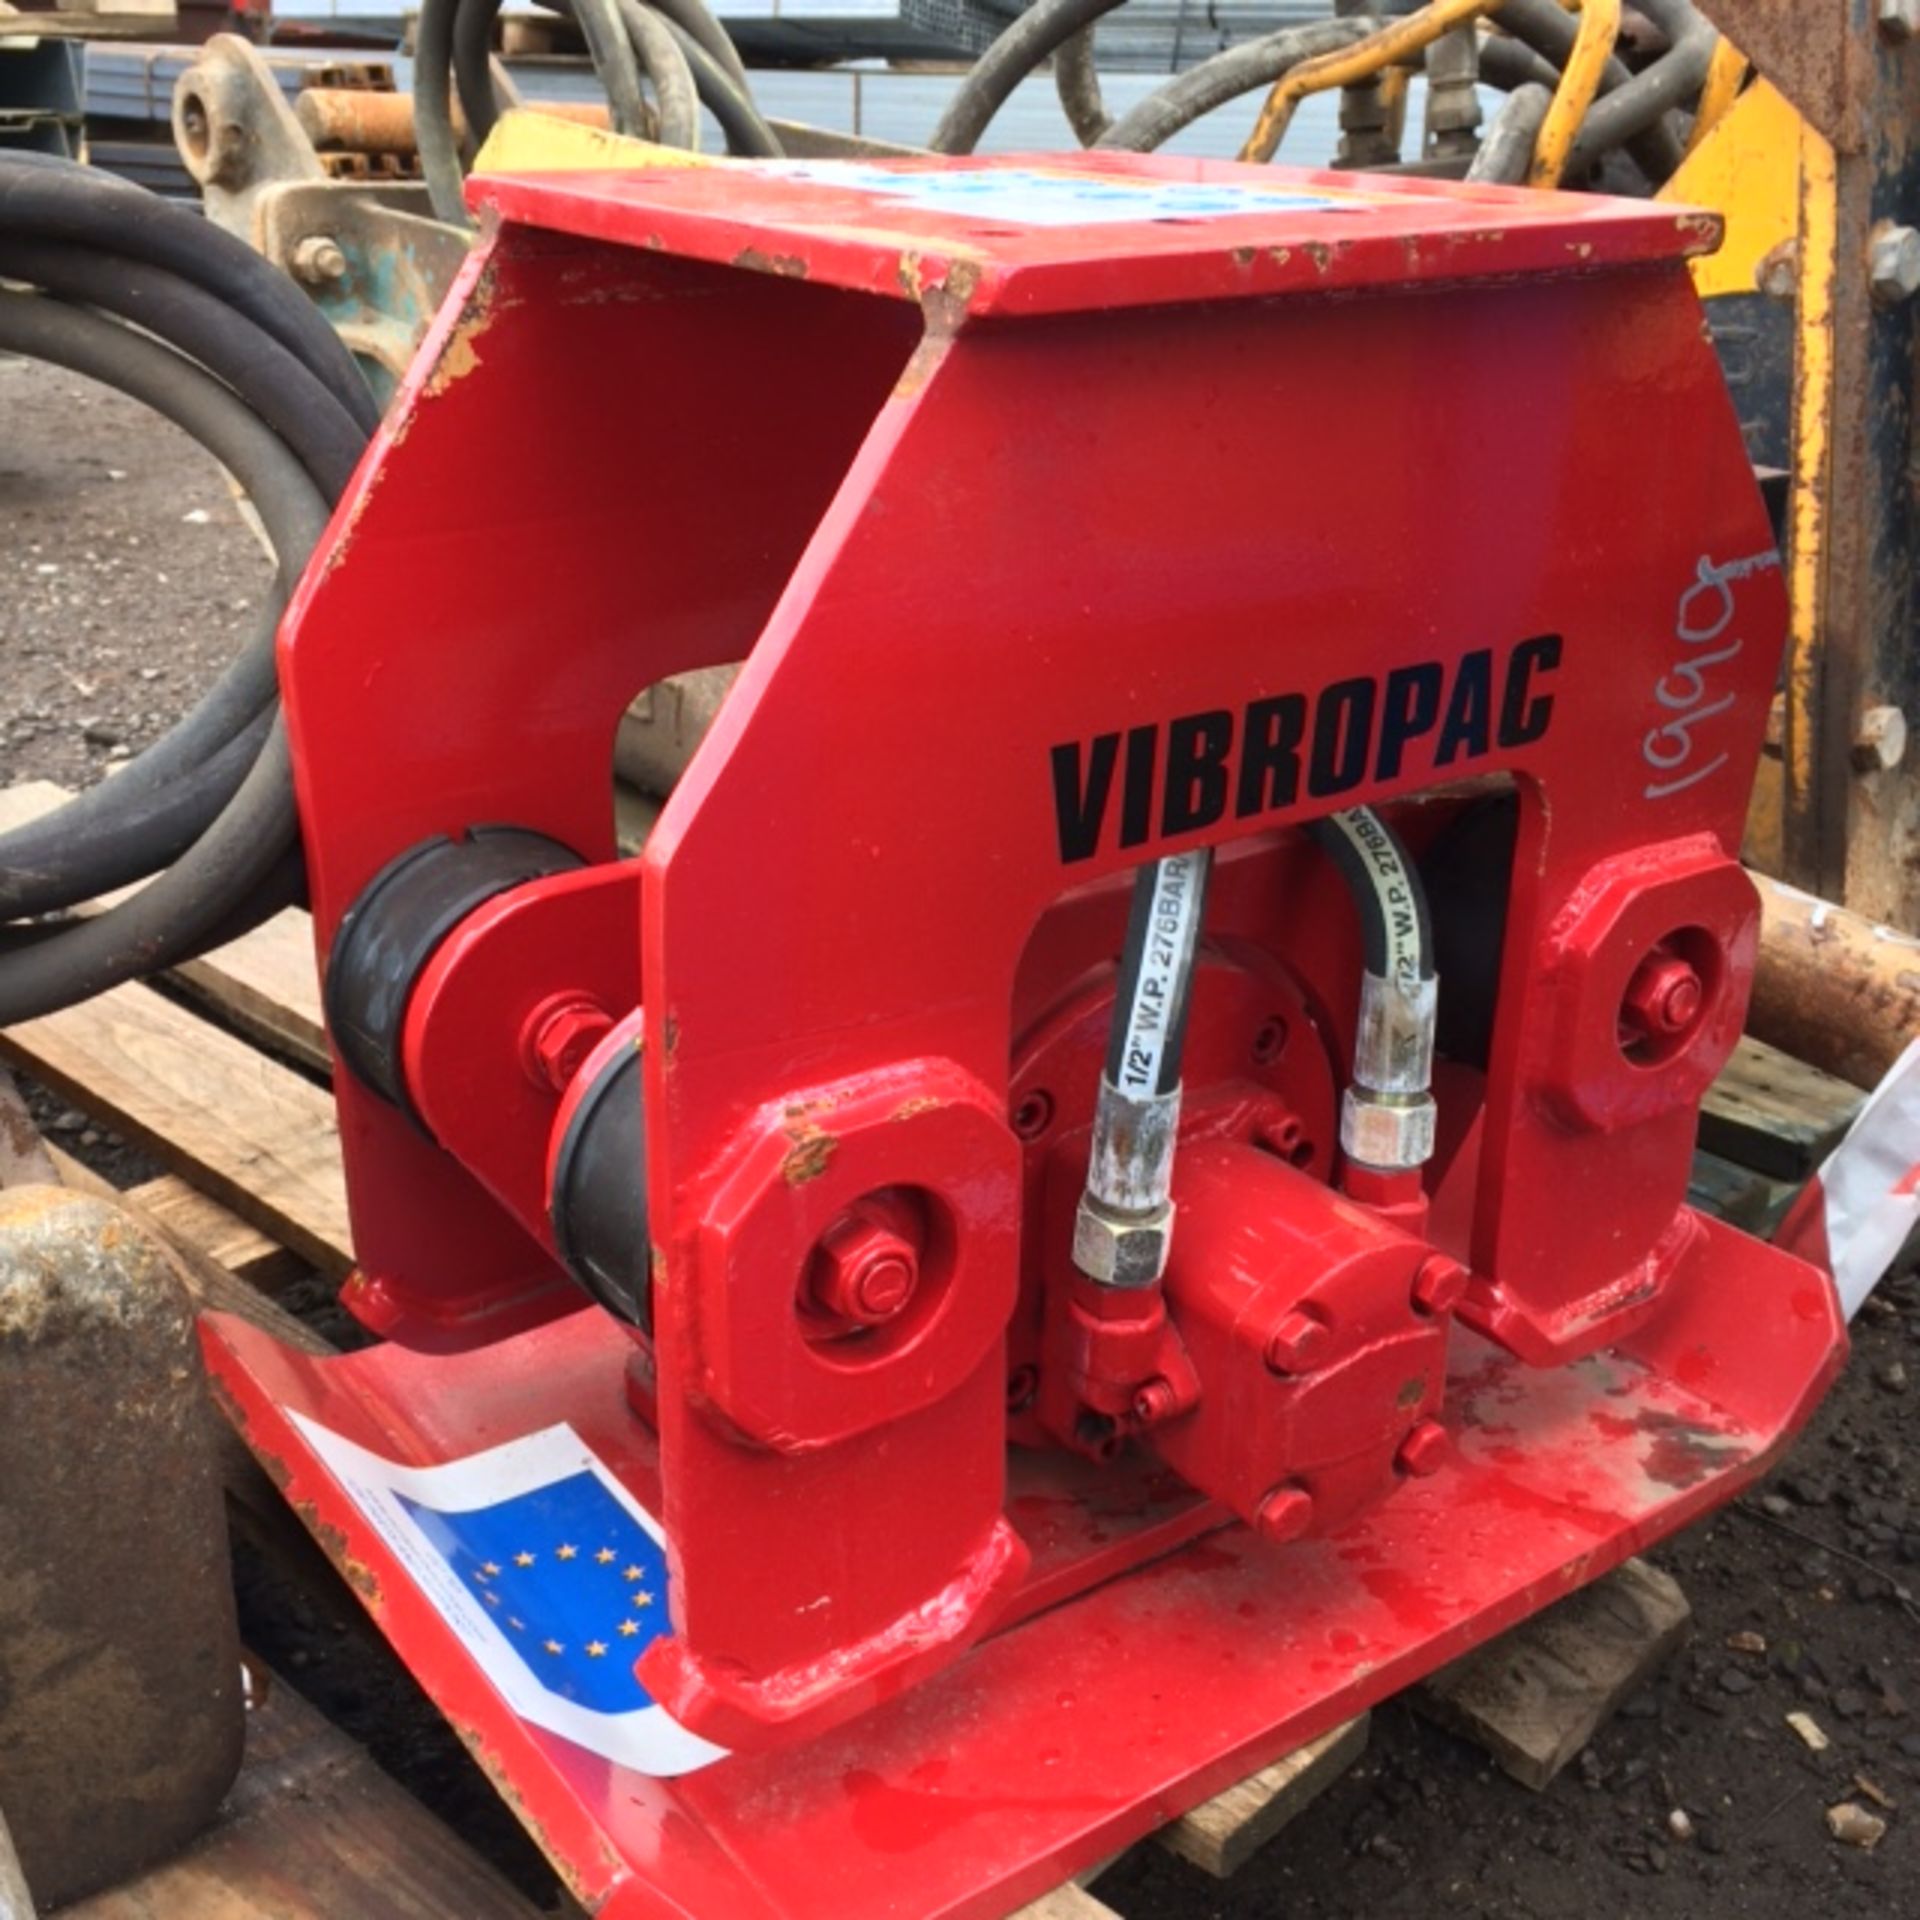 Vibropac excavator compactor for midi/mini excavator.